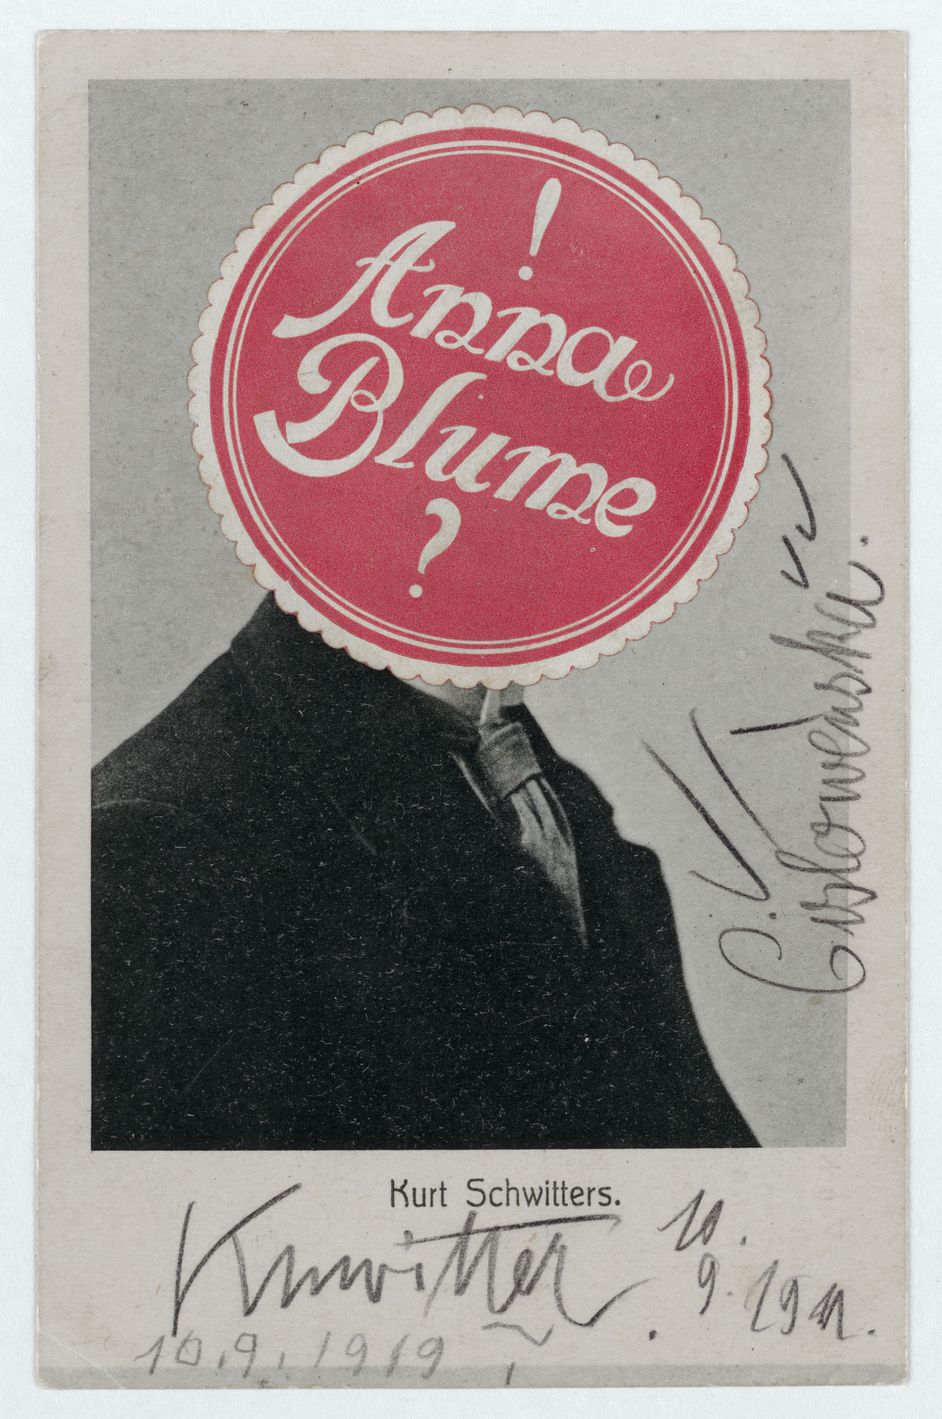 Postkarte von Kurt Schwitters und anderen, collagiert und handgeschrieben, 52,5 x 42,5 x 3 cm